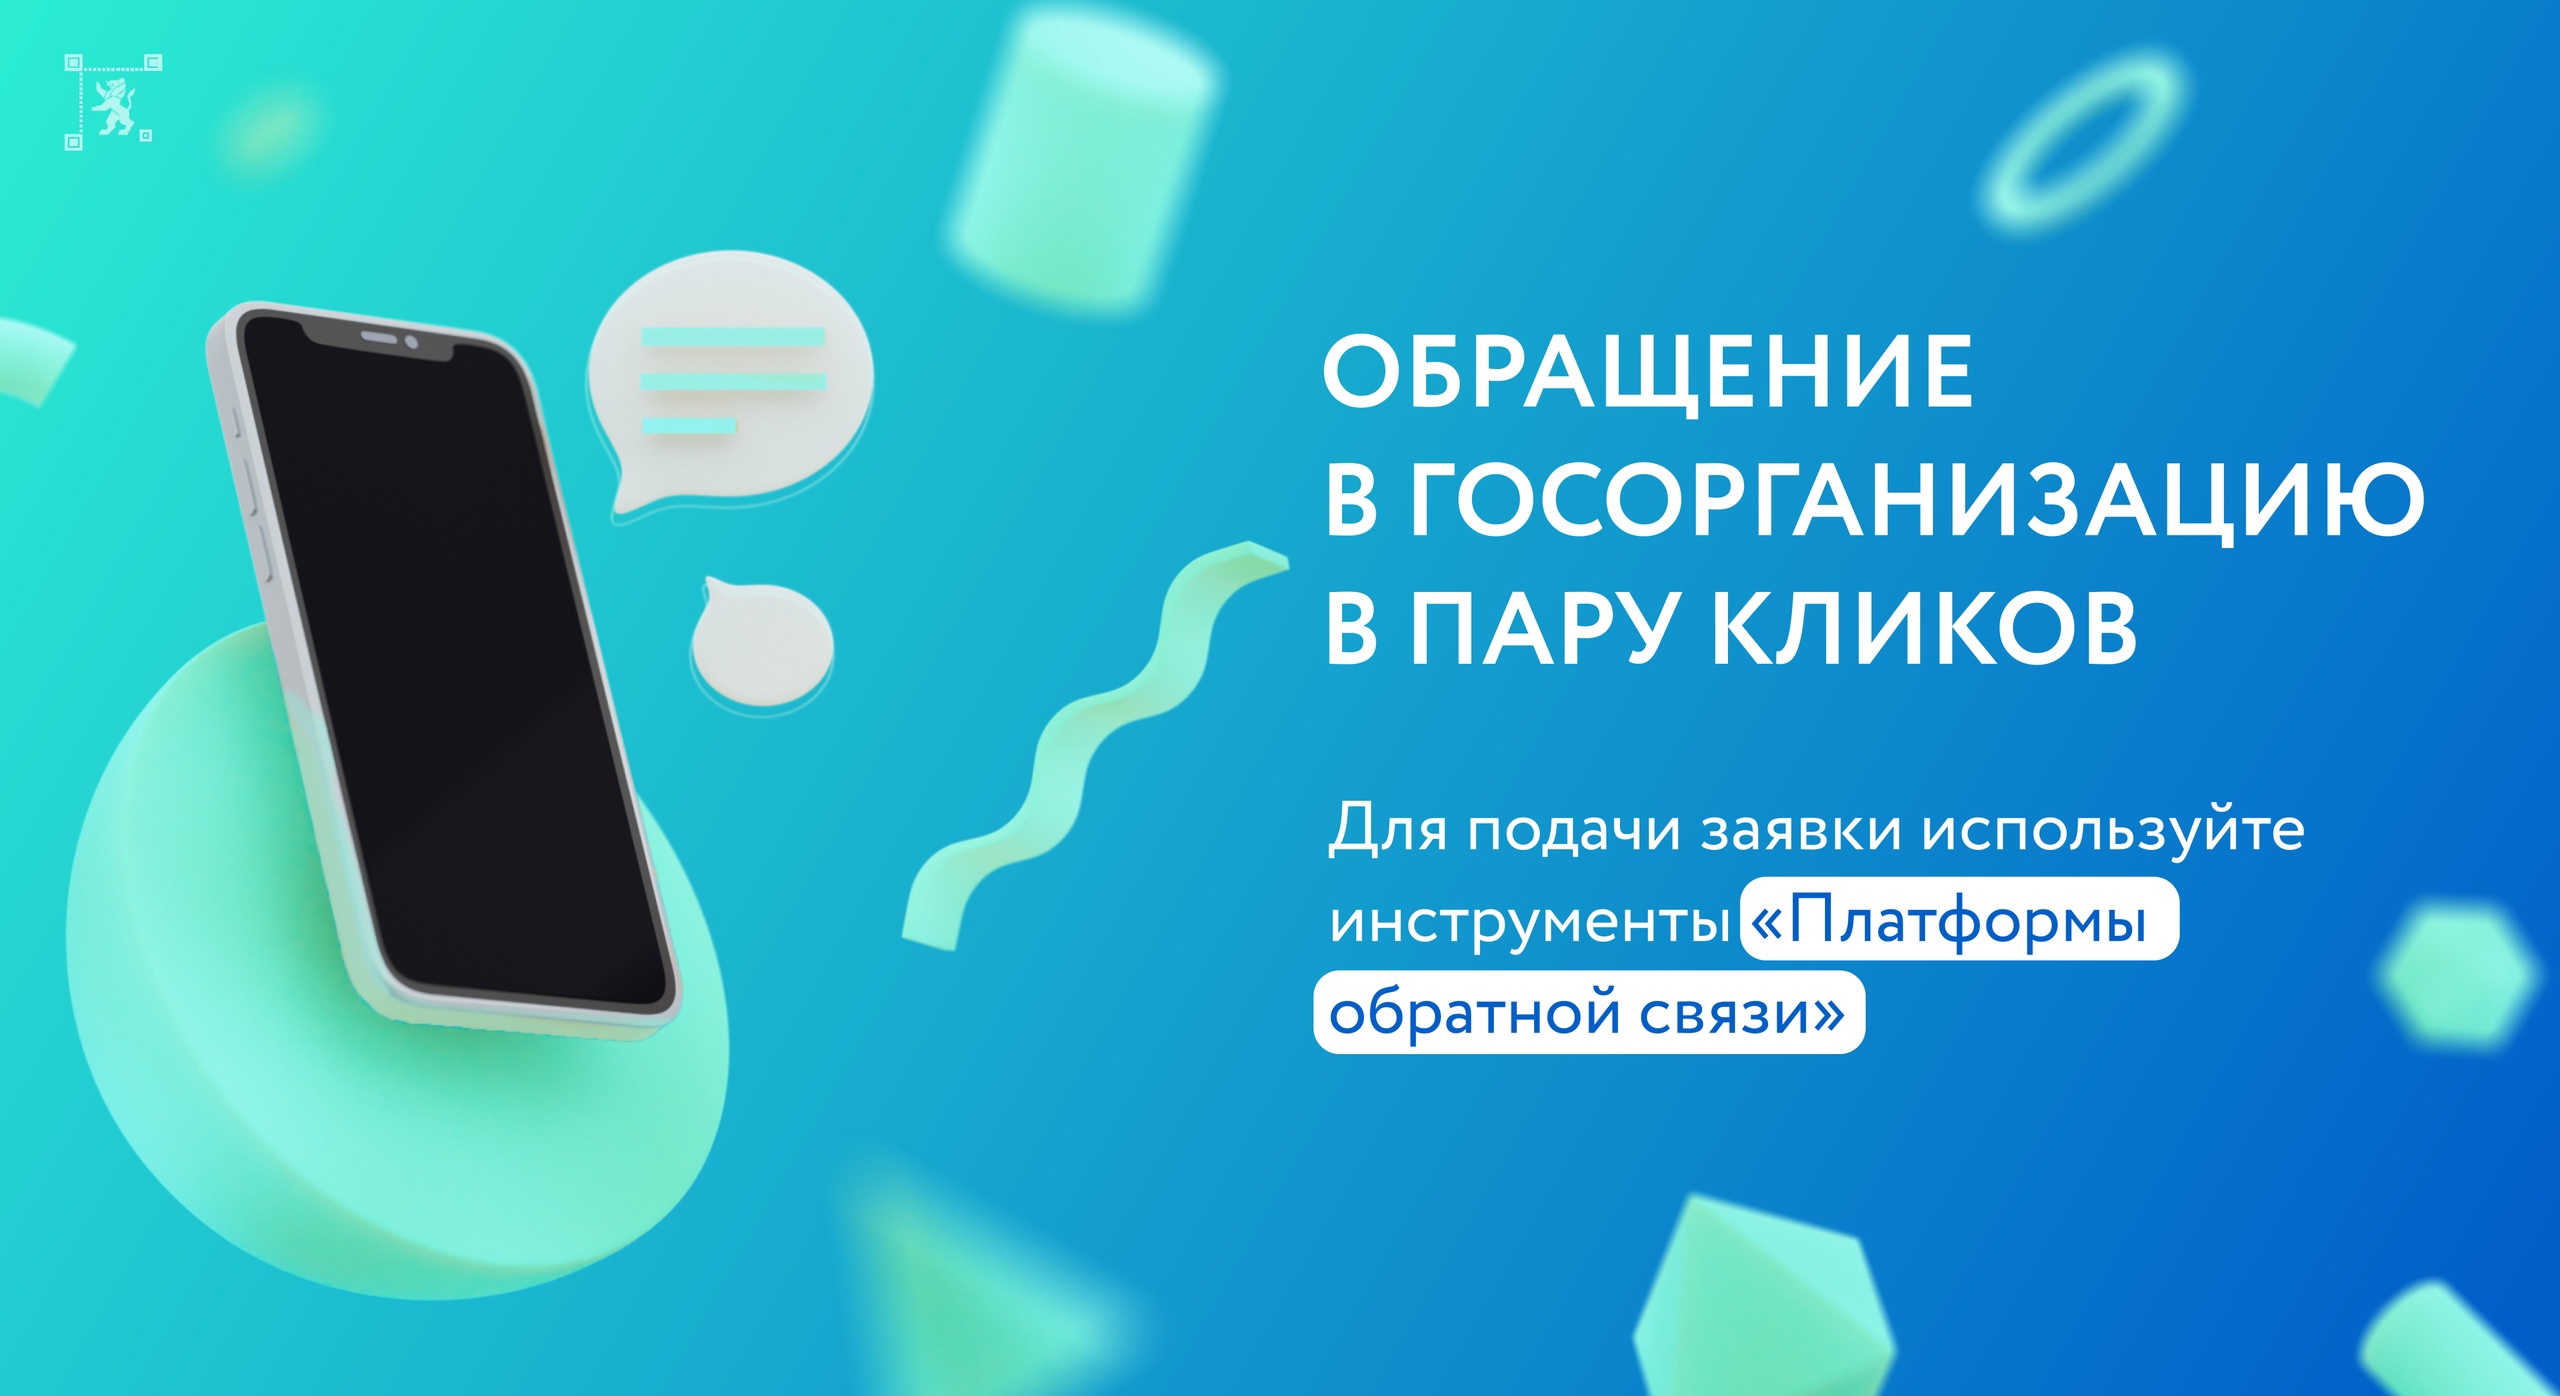 Министерство цифрового развития Белгородской области напоминает жителям региона о полезном сервисе – «Платформа обратной связи».